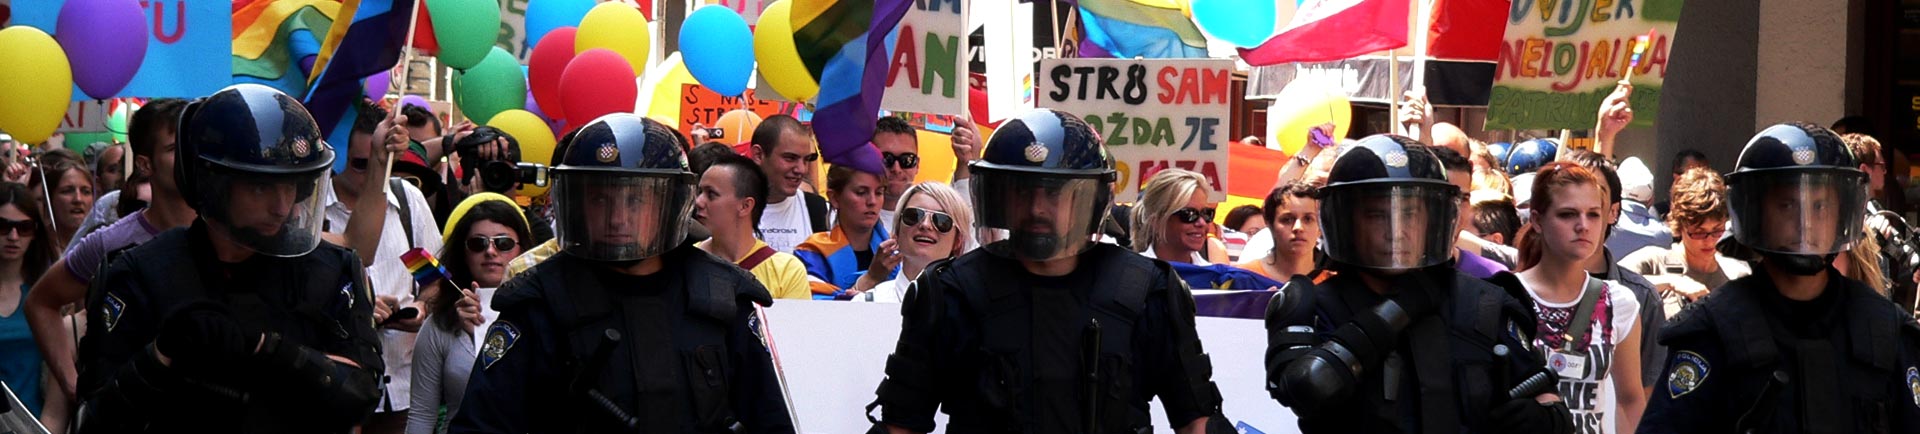 Liebe verdient Respekt: Auflodernder Schwulen-Hass entsetzt die Welt